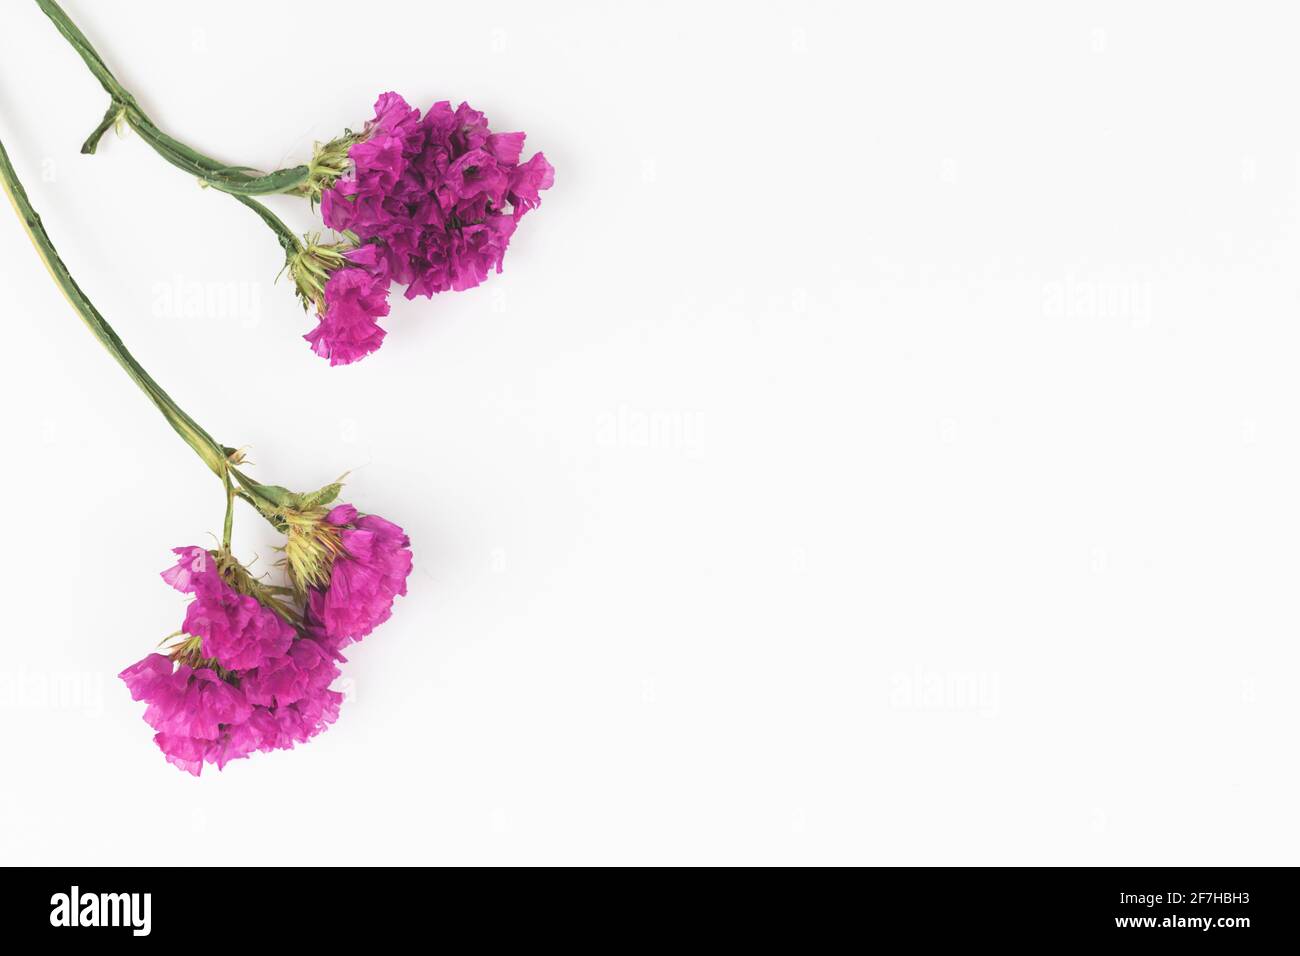 Getrocknete wilde violette Blume isolatetd auf einem weißen Hintergrund, floral flach Lay Komposition Kopie Raum Stockfoto